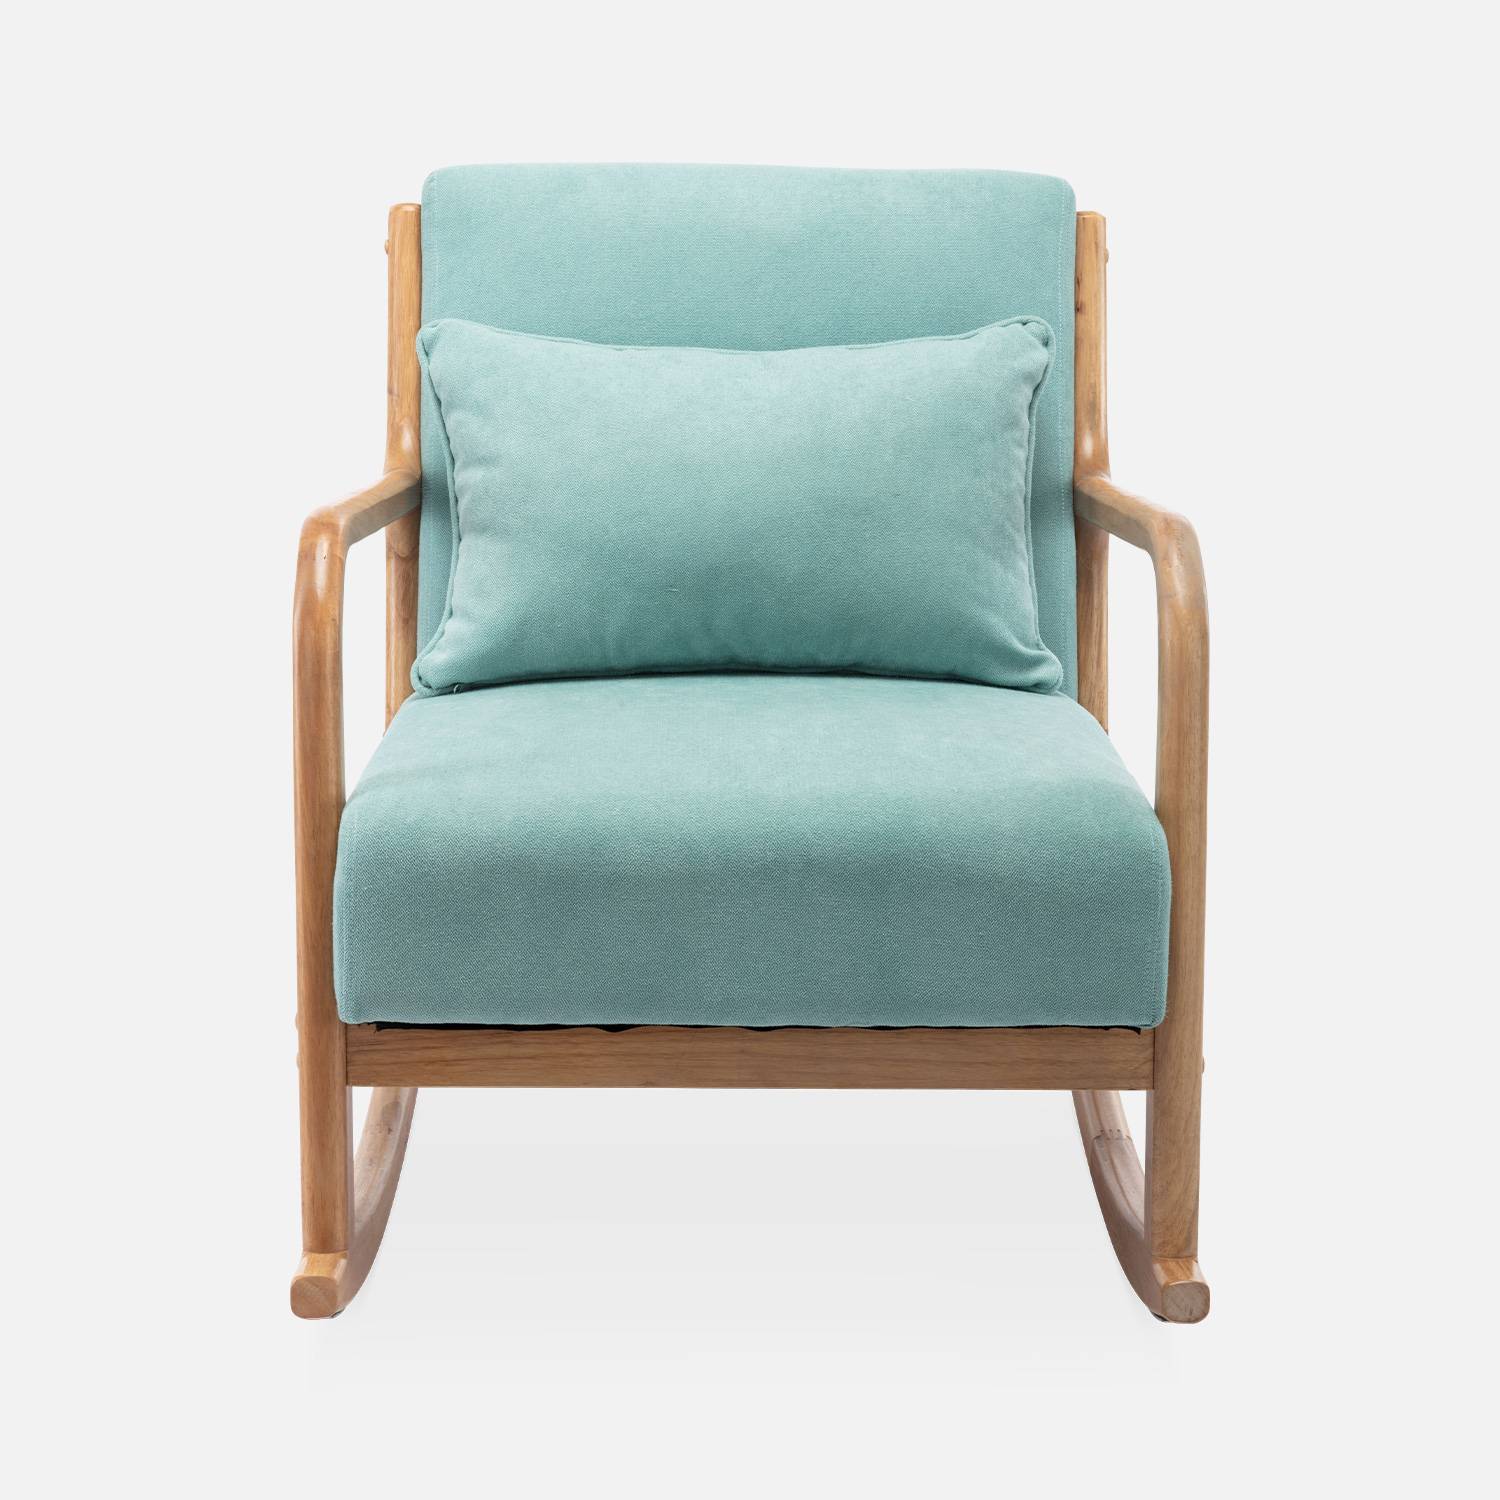 Fauteuil à bascule design en bois et tissu, 1 place, rocking chair scandinave, vert d'eau Photo5